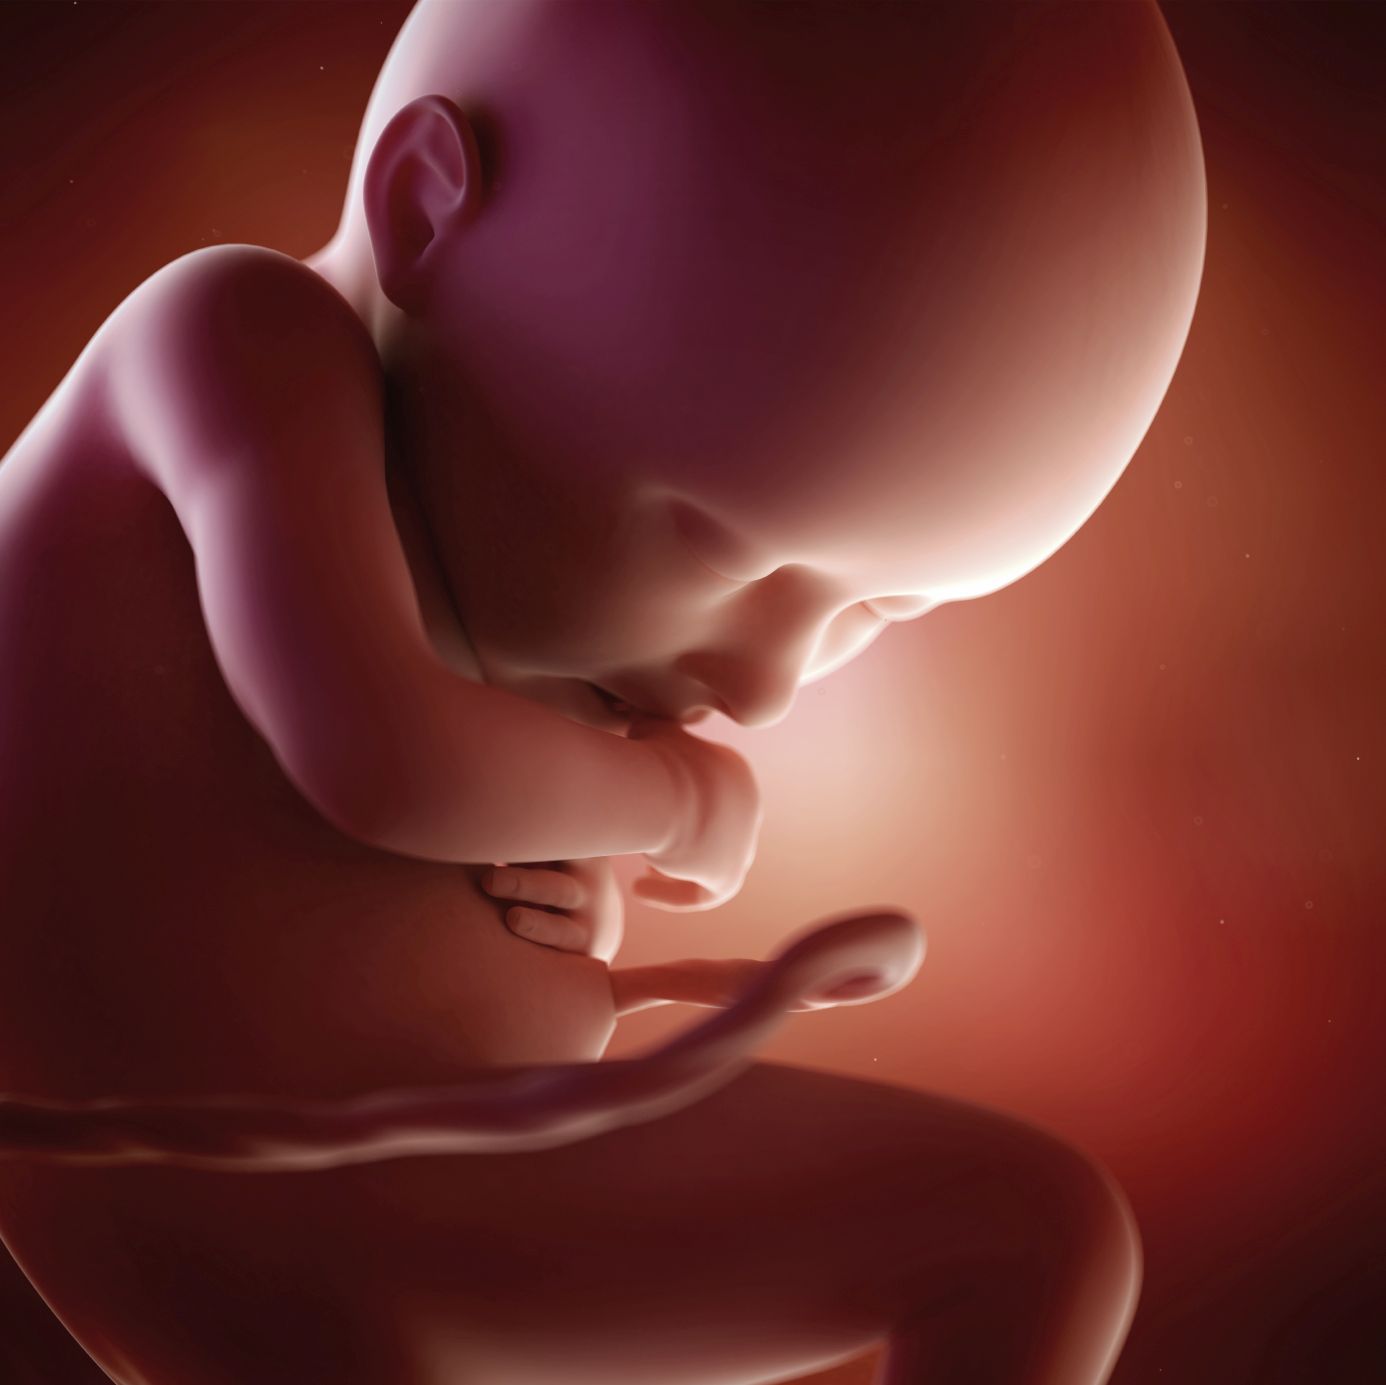 fetus 36 weeks